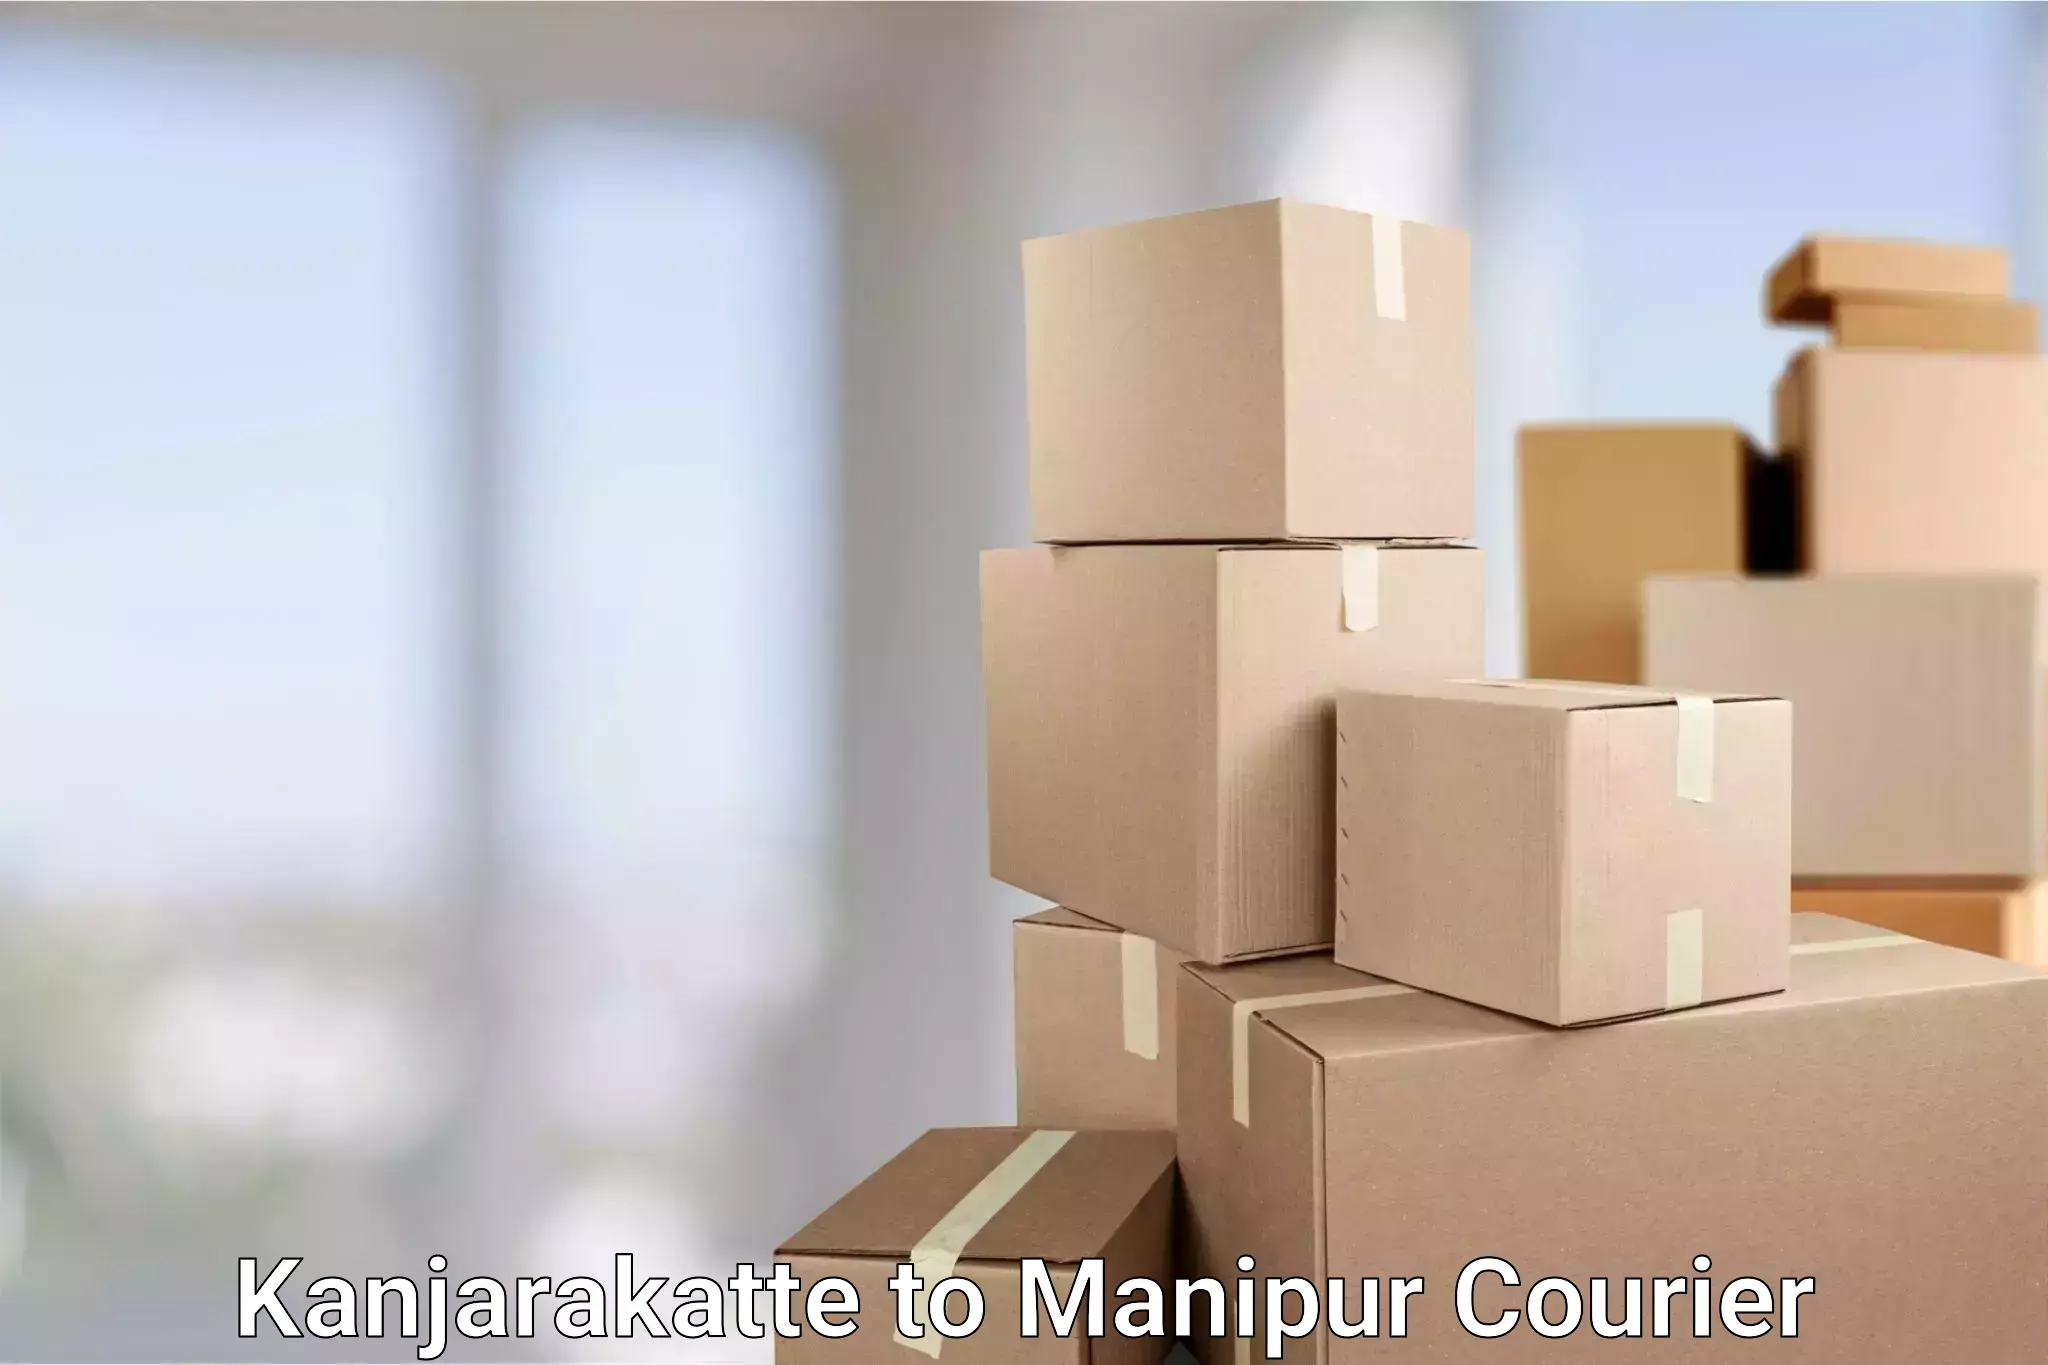 High-performance logistics Kanjarakatte to Manipur